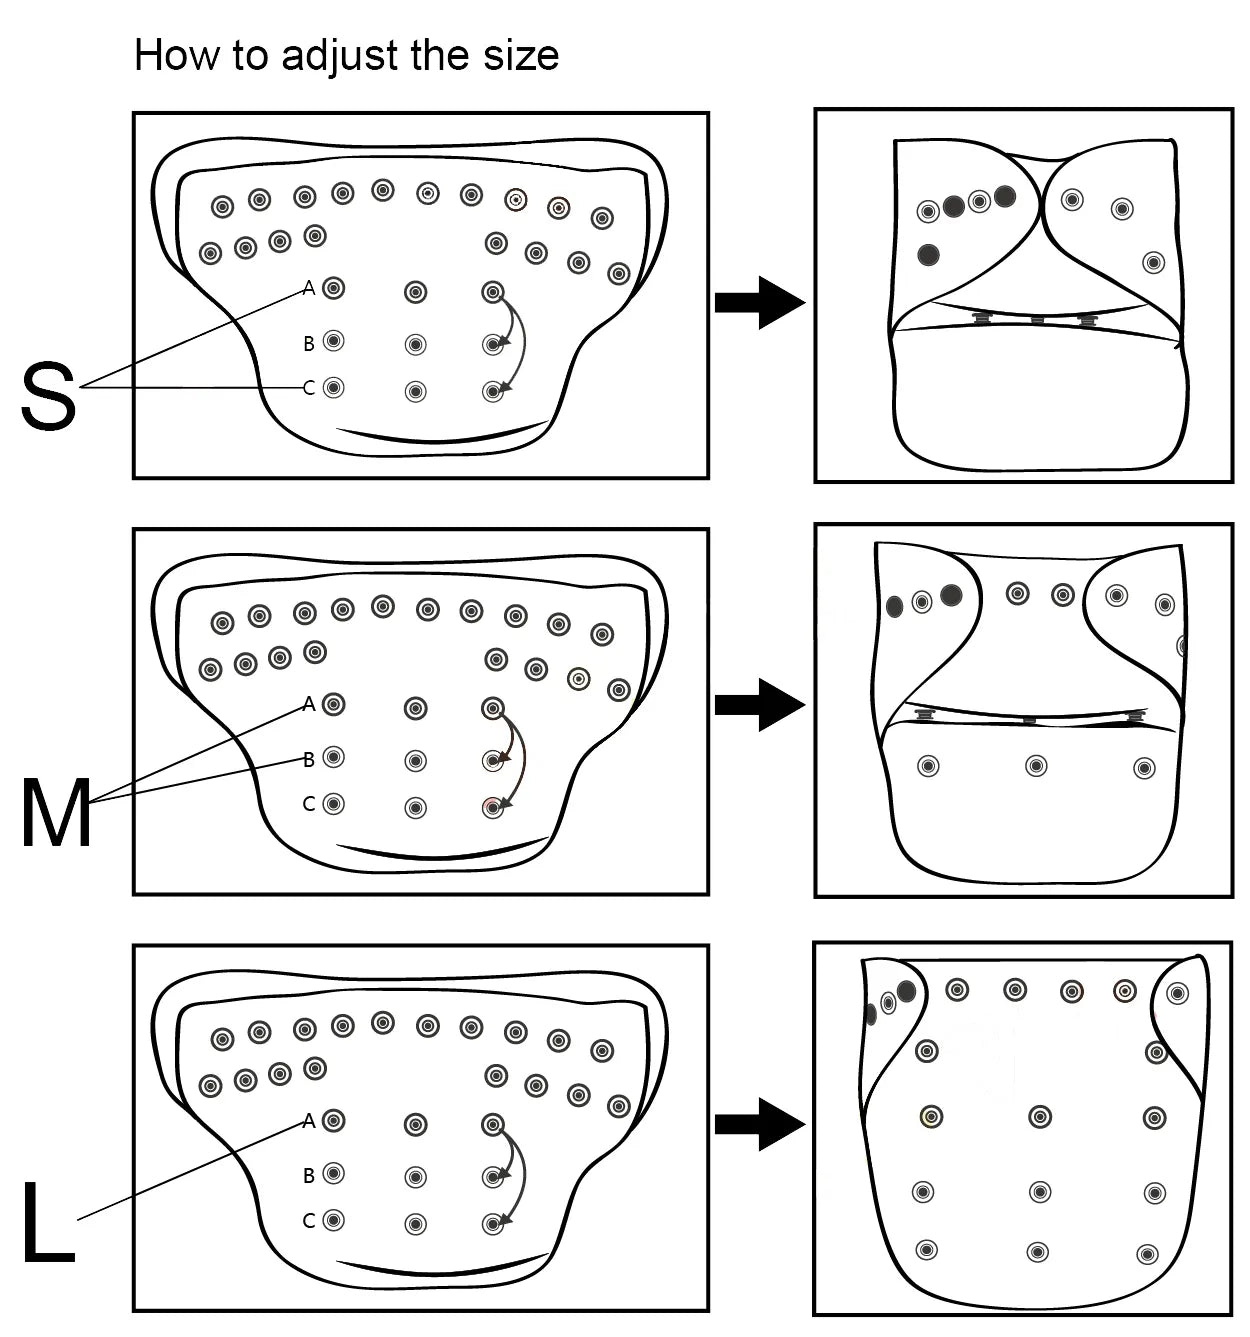 couche-culotte en tissu pour bébé couche-culotte en tissu réutilisable avec 1 insert en microfibre